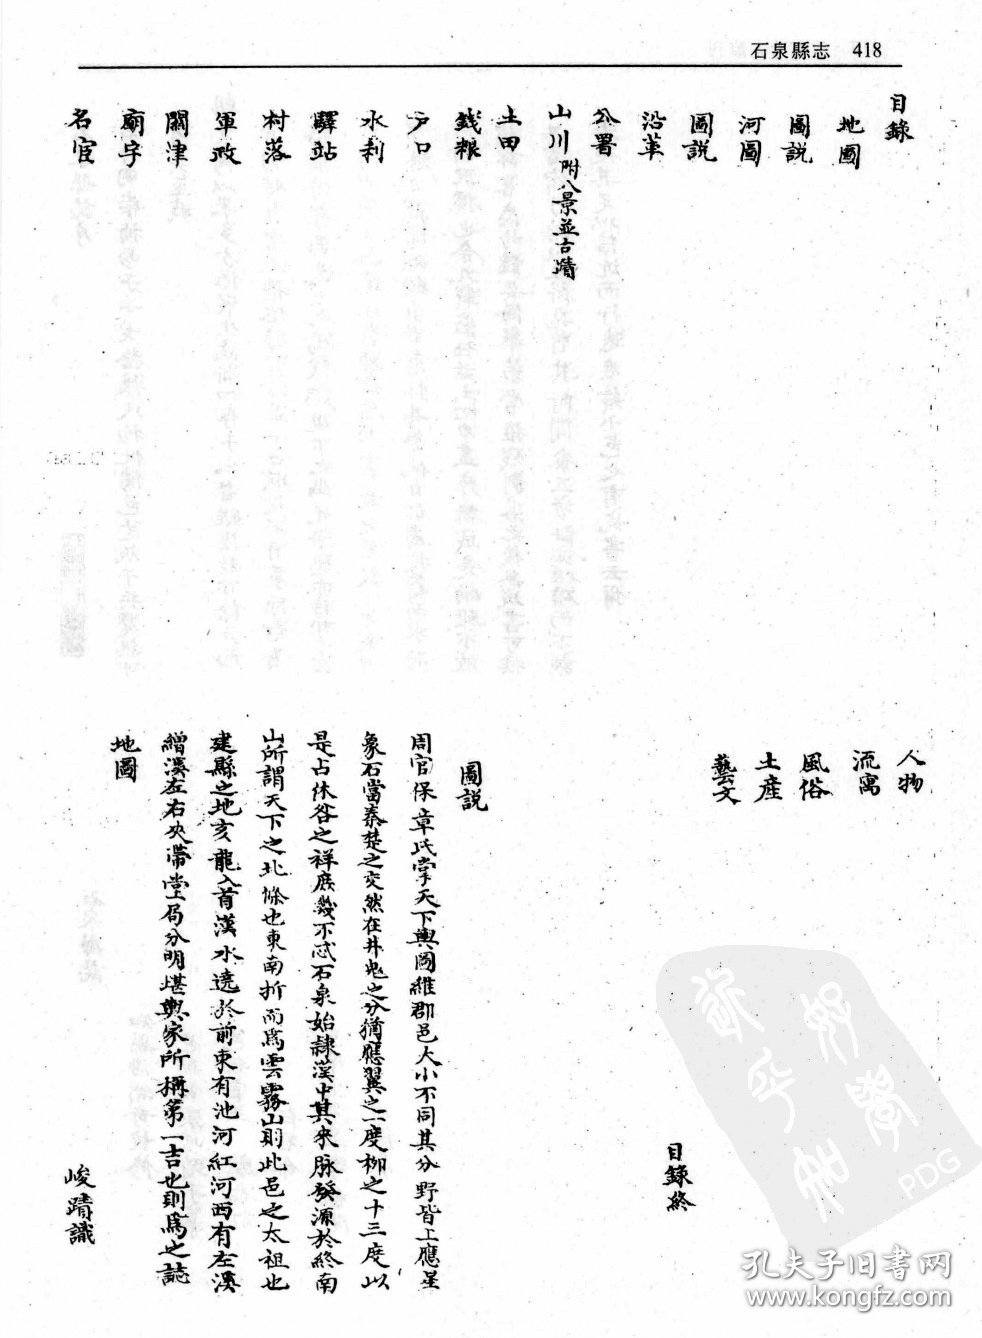 【提供资料信息服务】康熙石泉县志  28页  陕西省